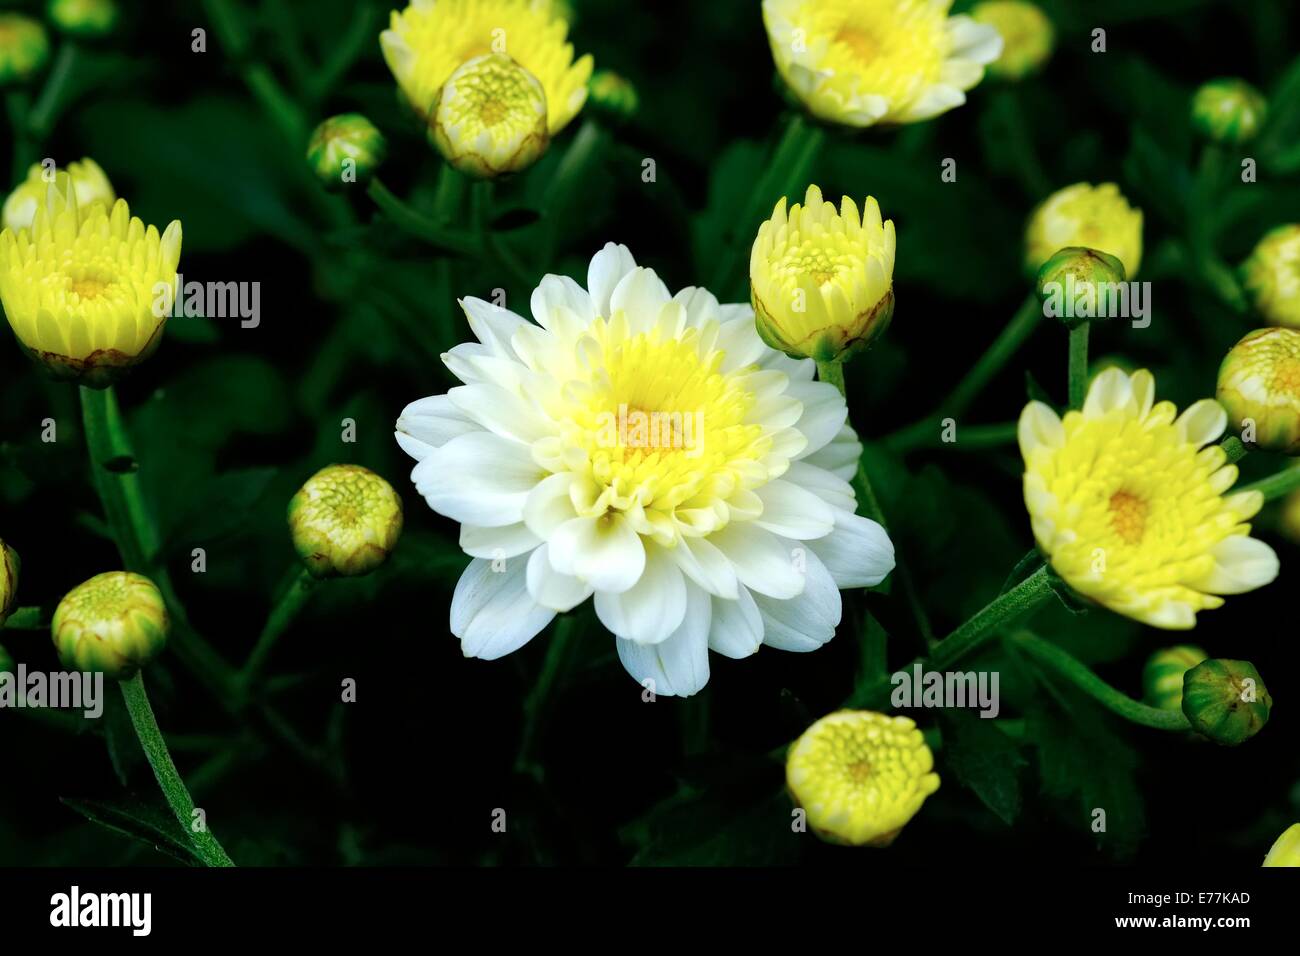 White and yellow Chrysanthemum balls Stock Photo